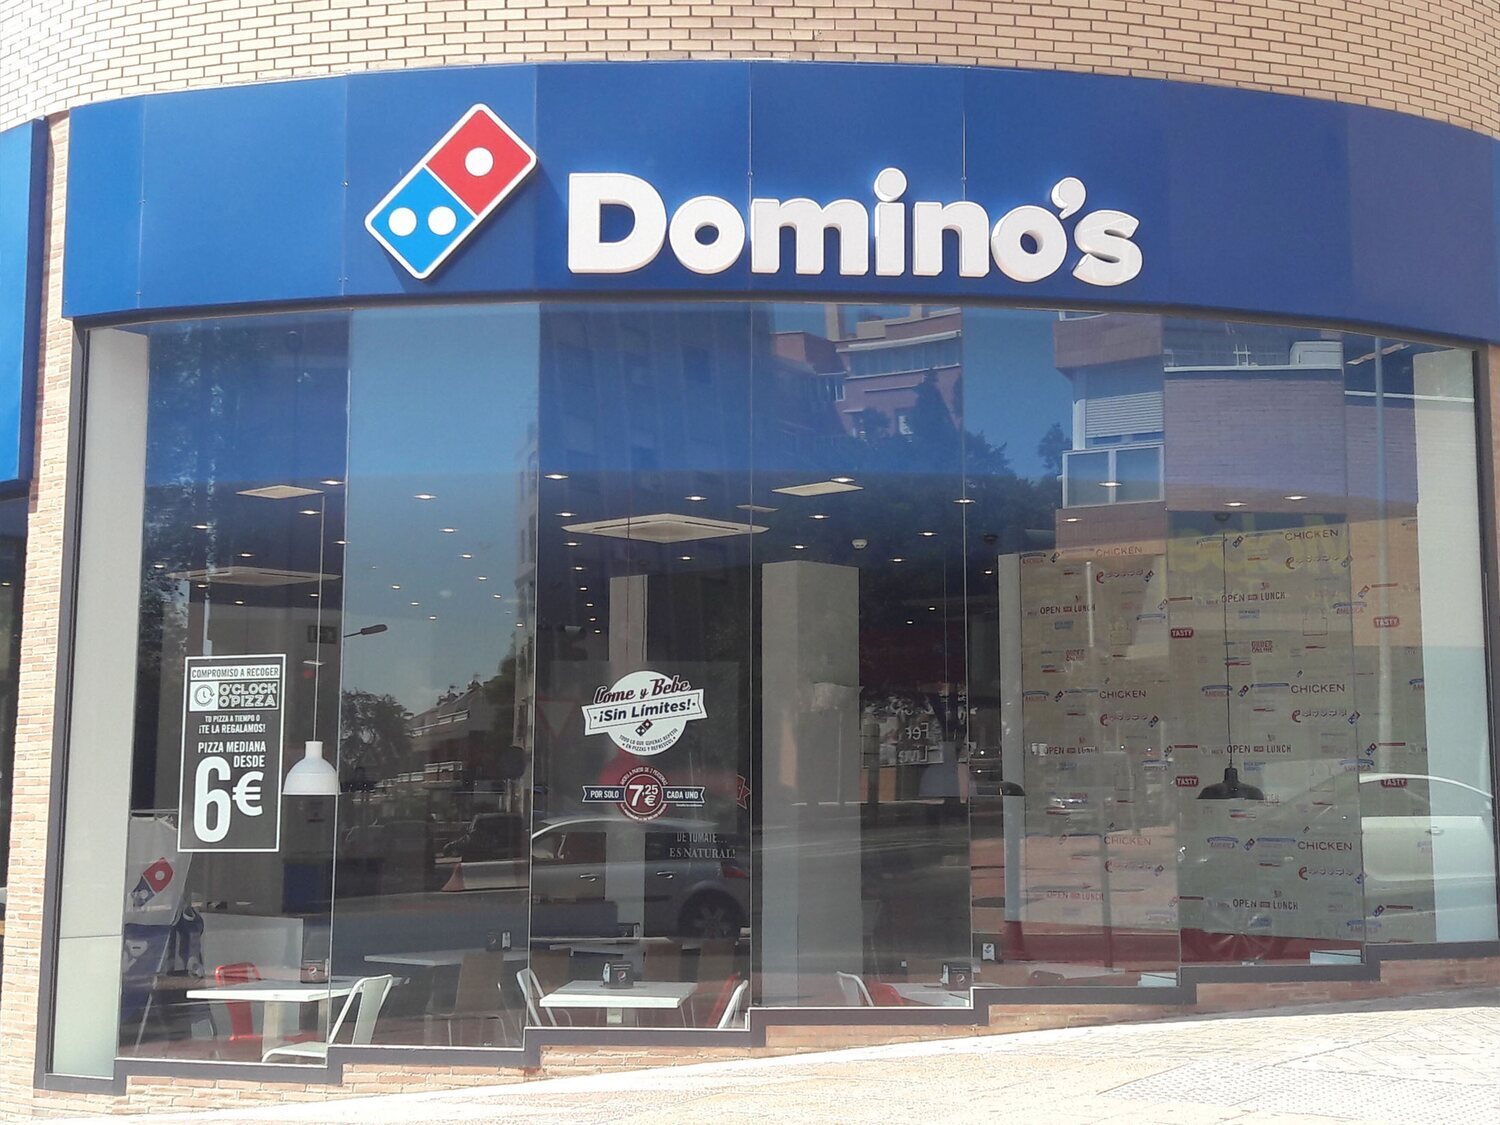 Domino's Pizza cierra sus locales en Italia y abandona todas sus franquicias al no poder competir con las pizzerías locales